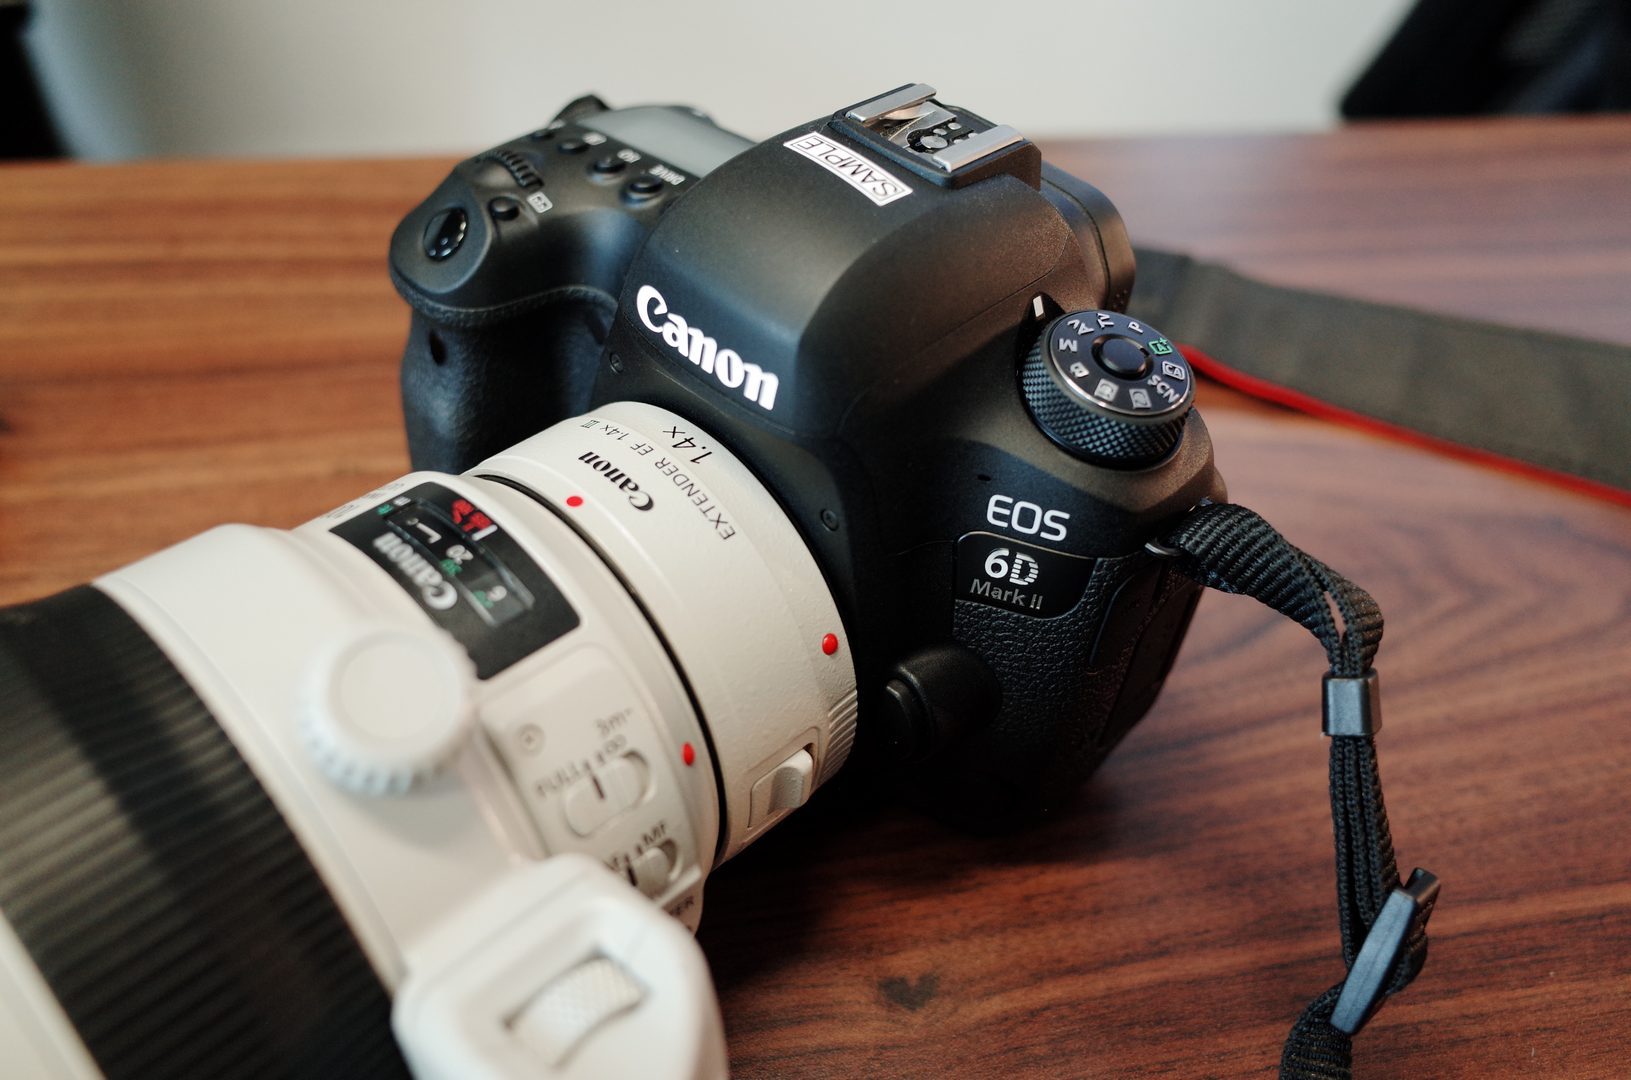 ผลทดสอบชี้ Canon EOS 6D Mark II ให้ Dynamic Range แย่กว่ากล้องรุ่นน้อง!